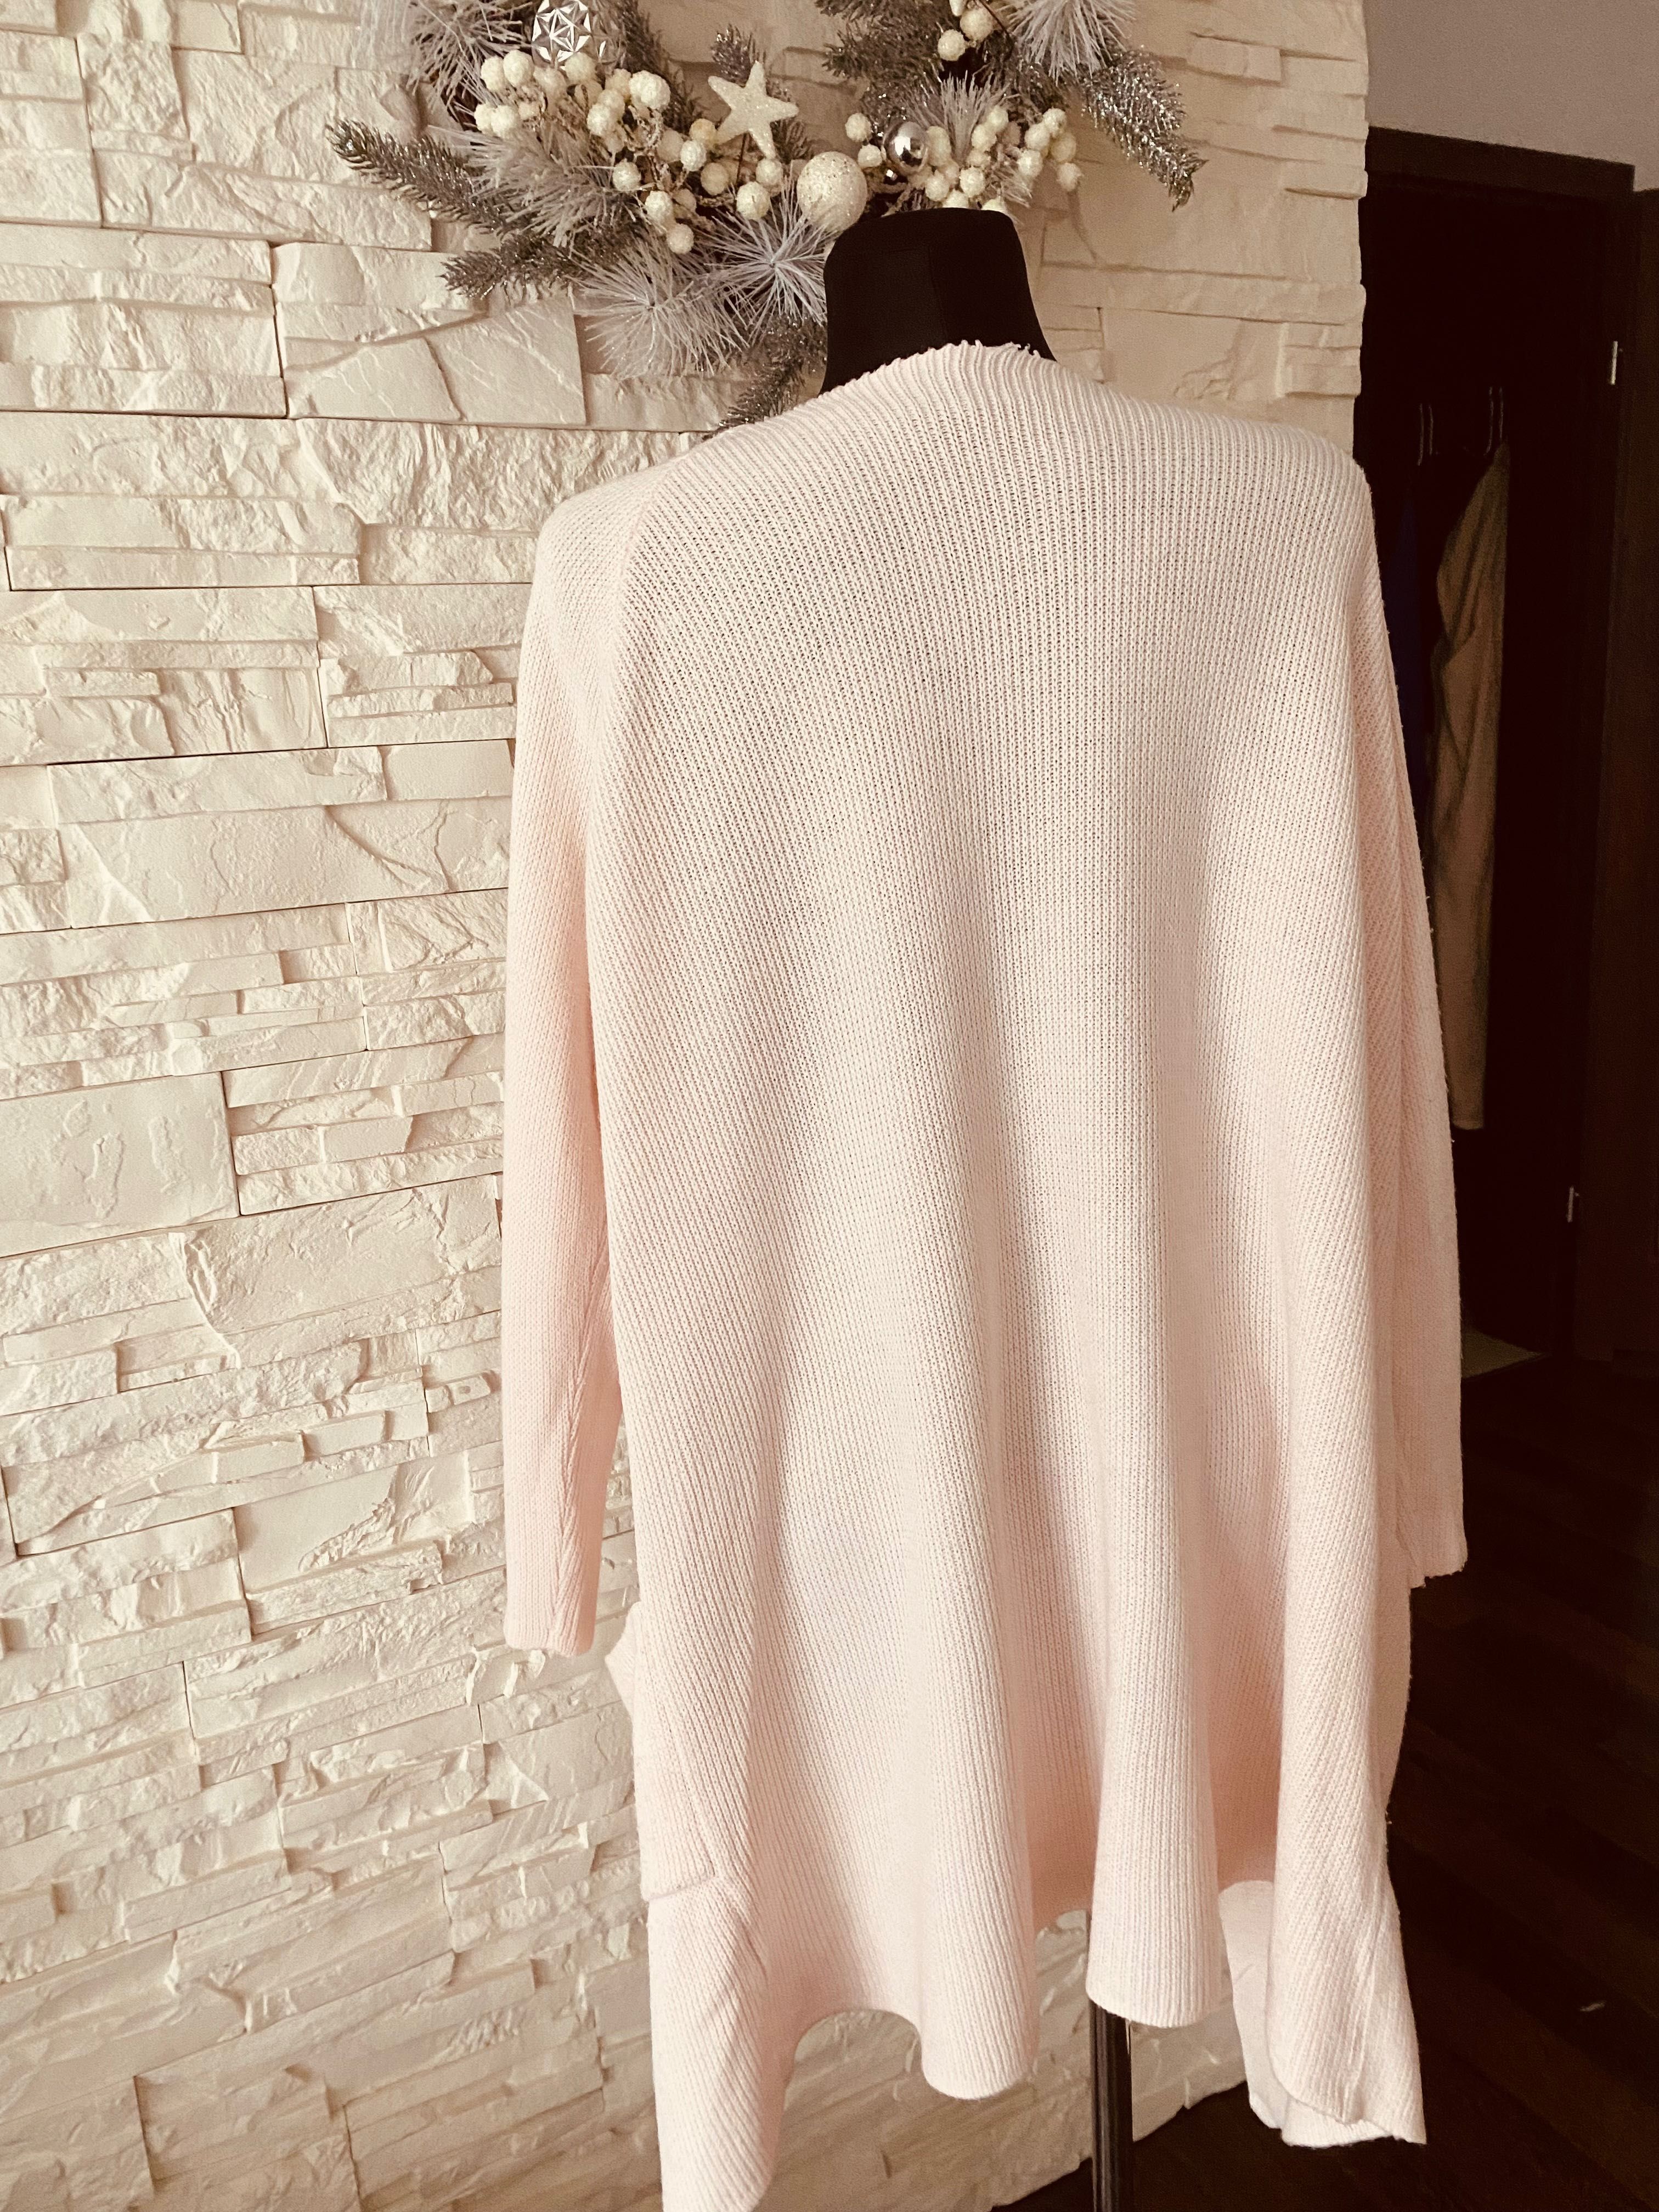 Sweter kardigan bluza ciepły rozpinany różowy pudrowy H&M Zara